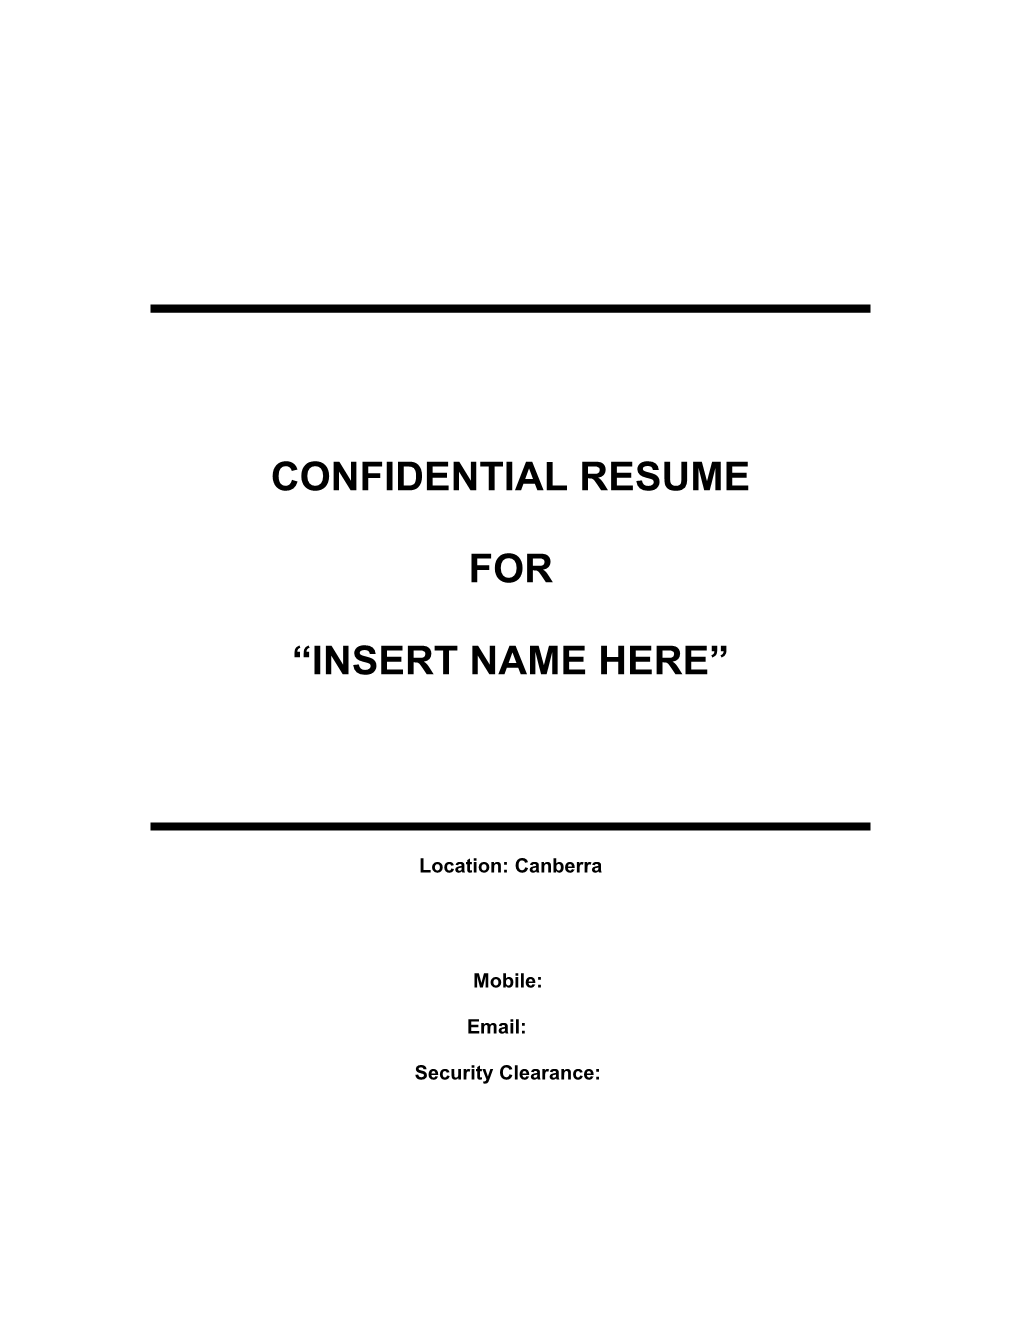 Confidential Resume